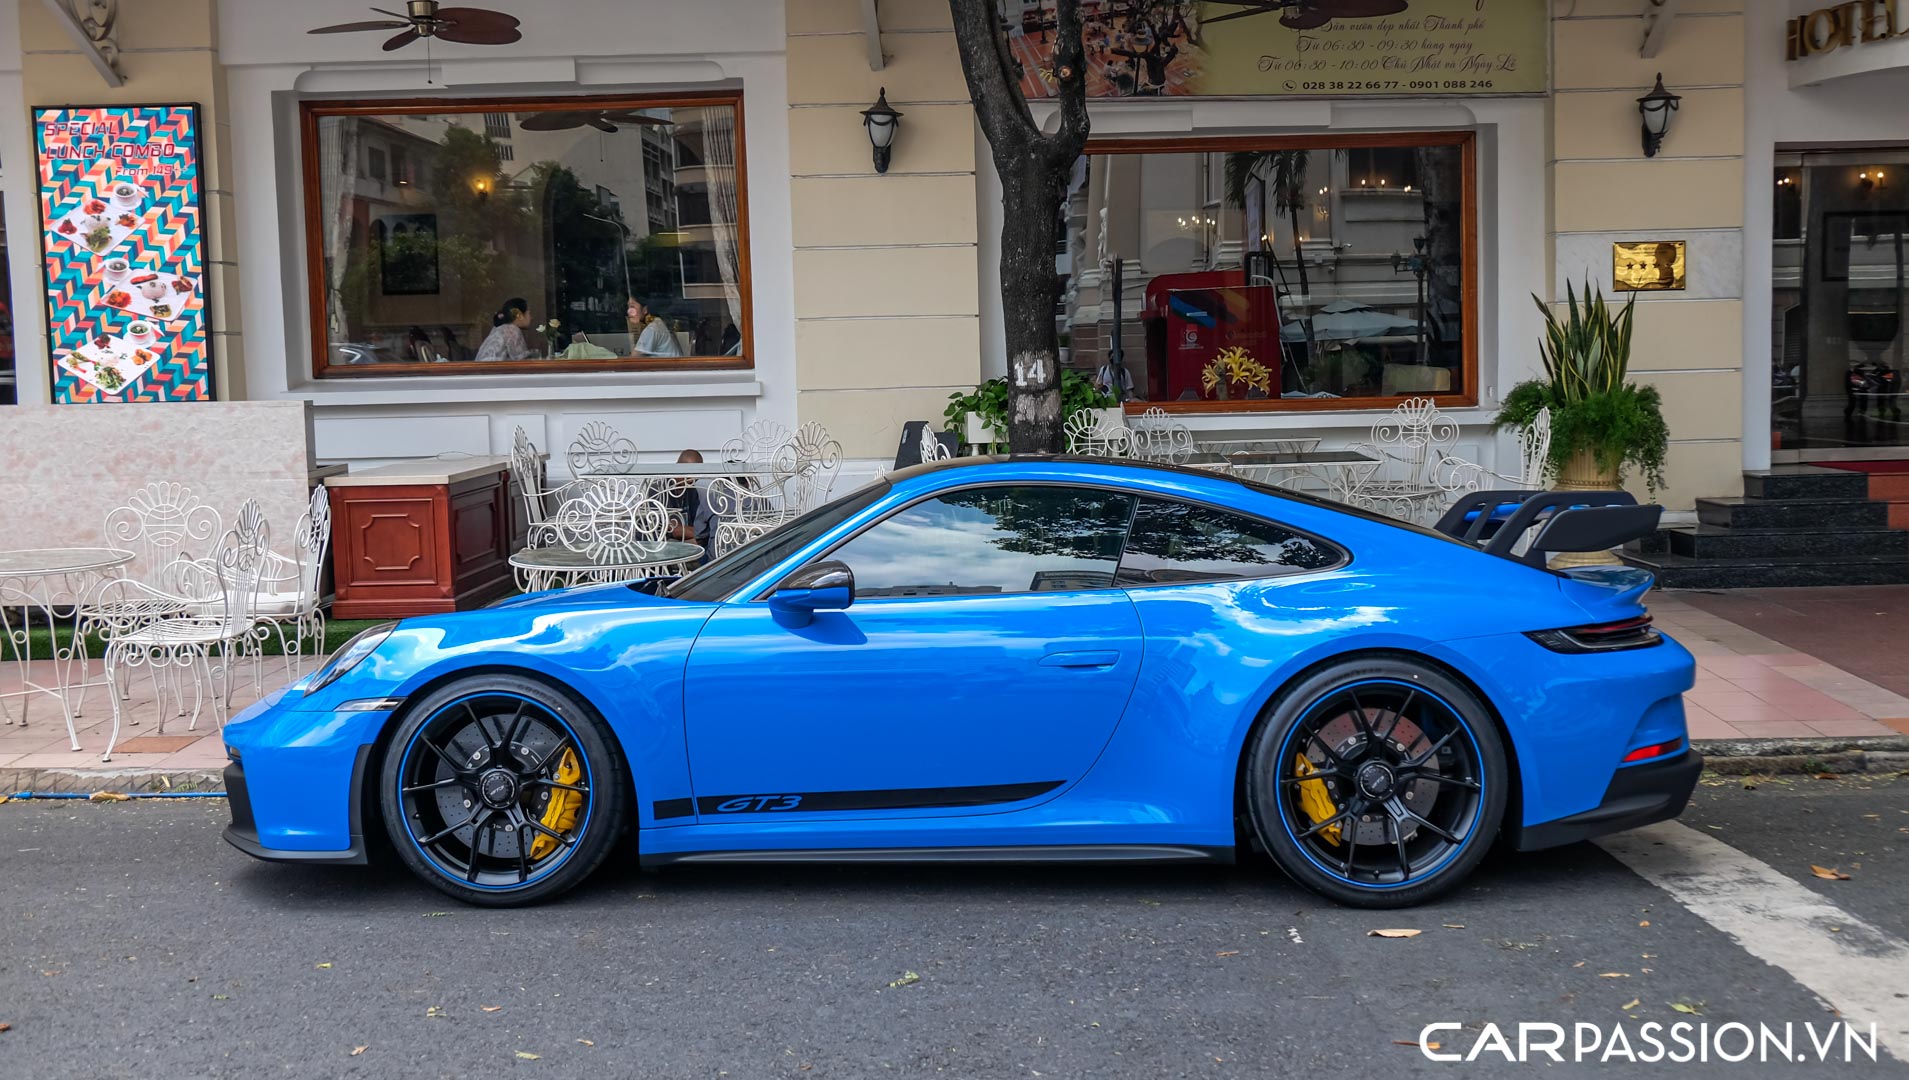 CP-Porsche 911 GT3 của doanh nhân Nguyễn Quốc Cường0.jpg